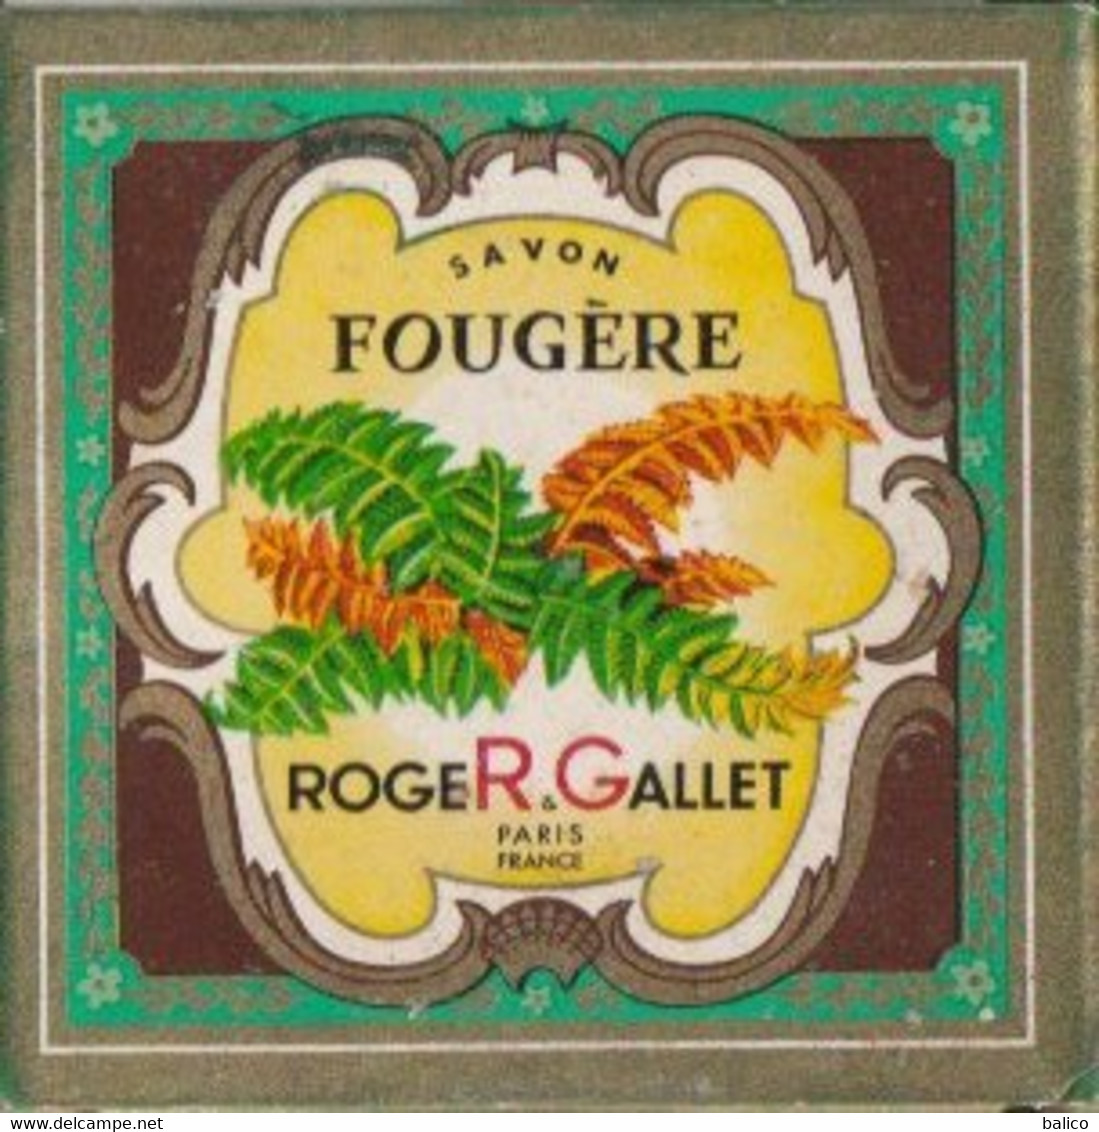 Échantillon De Savons De Roger Gallet, Paris  ( Boite Ancienne  Et Savons Neuf ) - Beauty Products